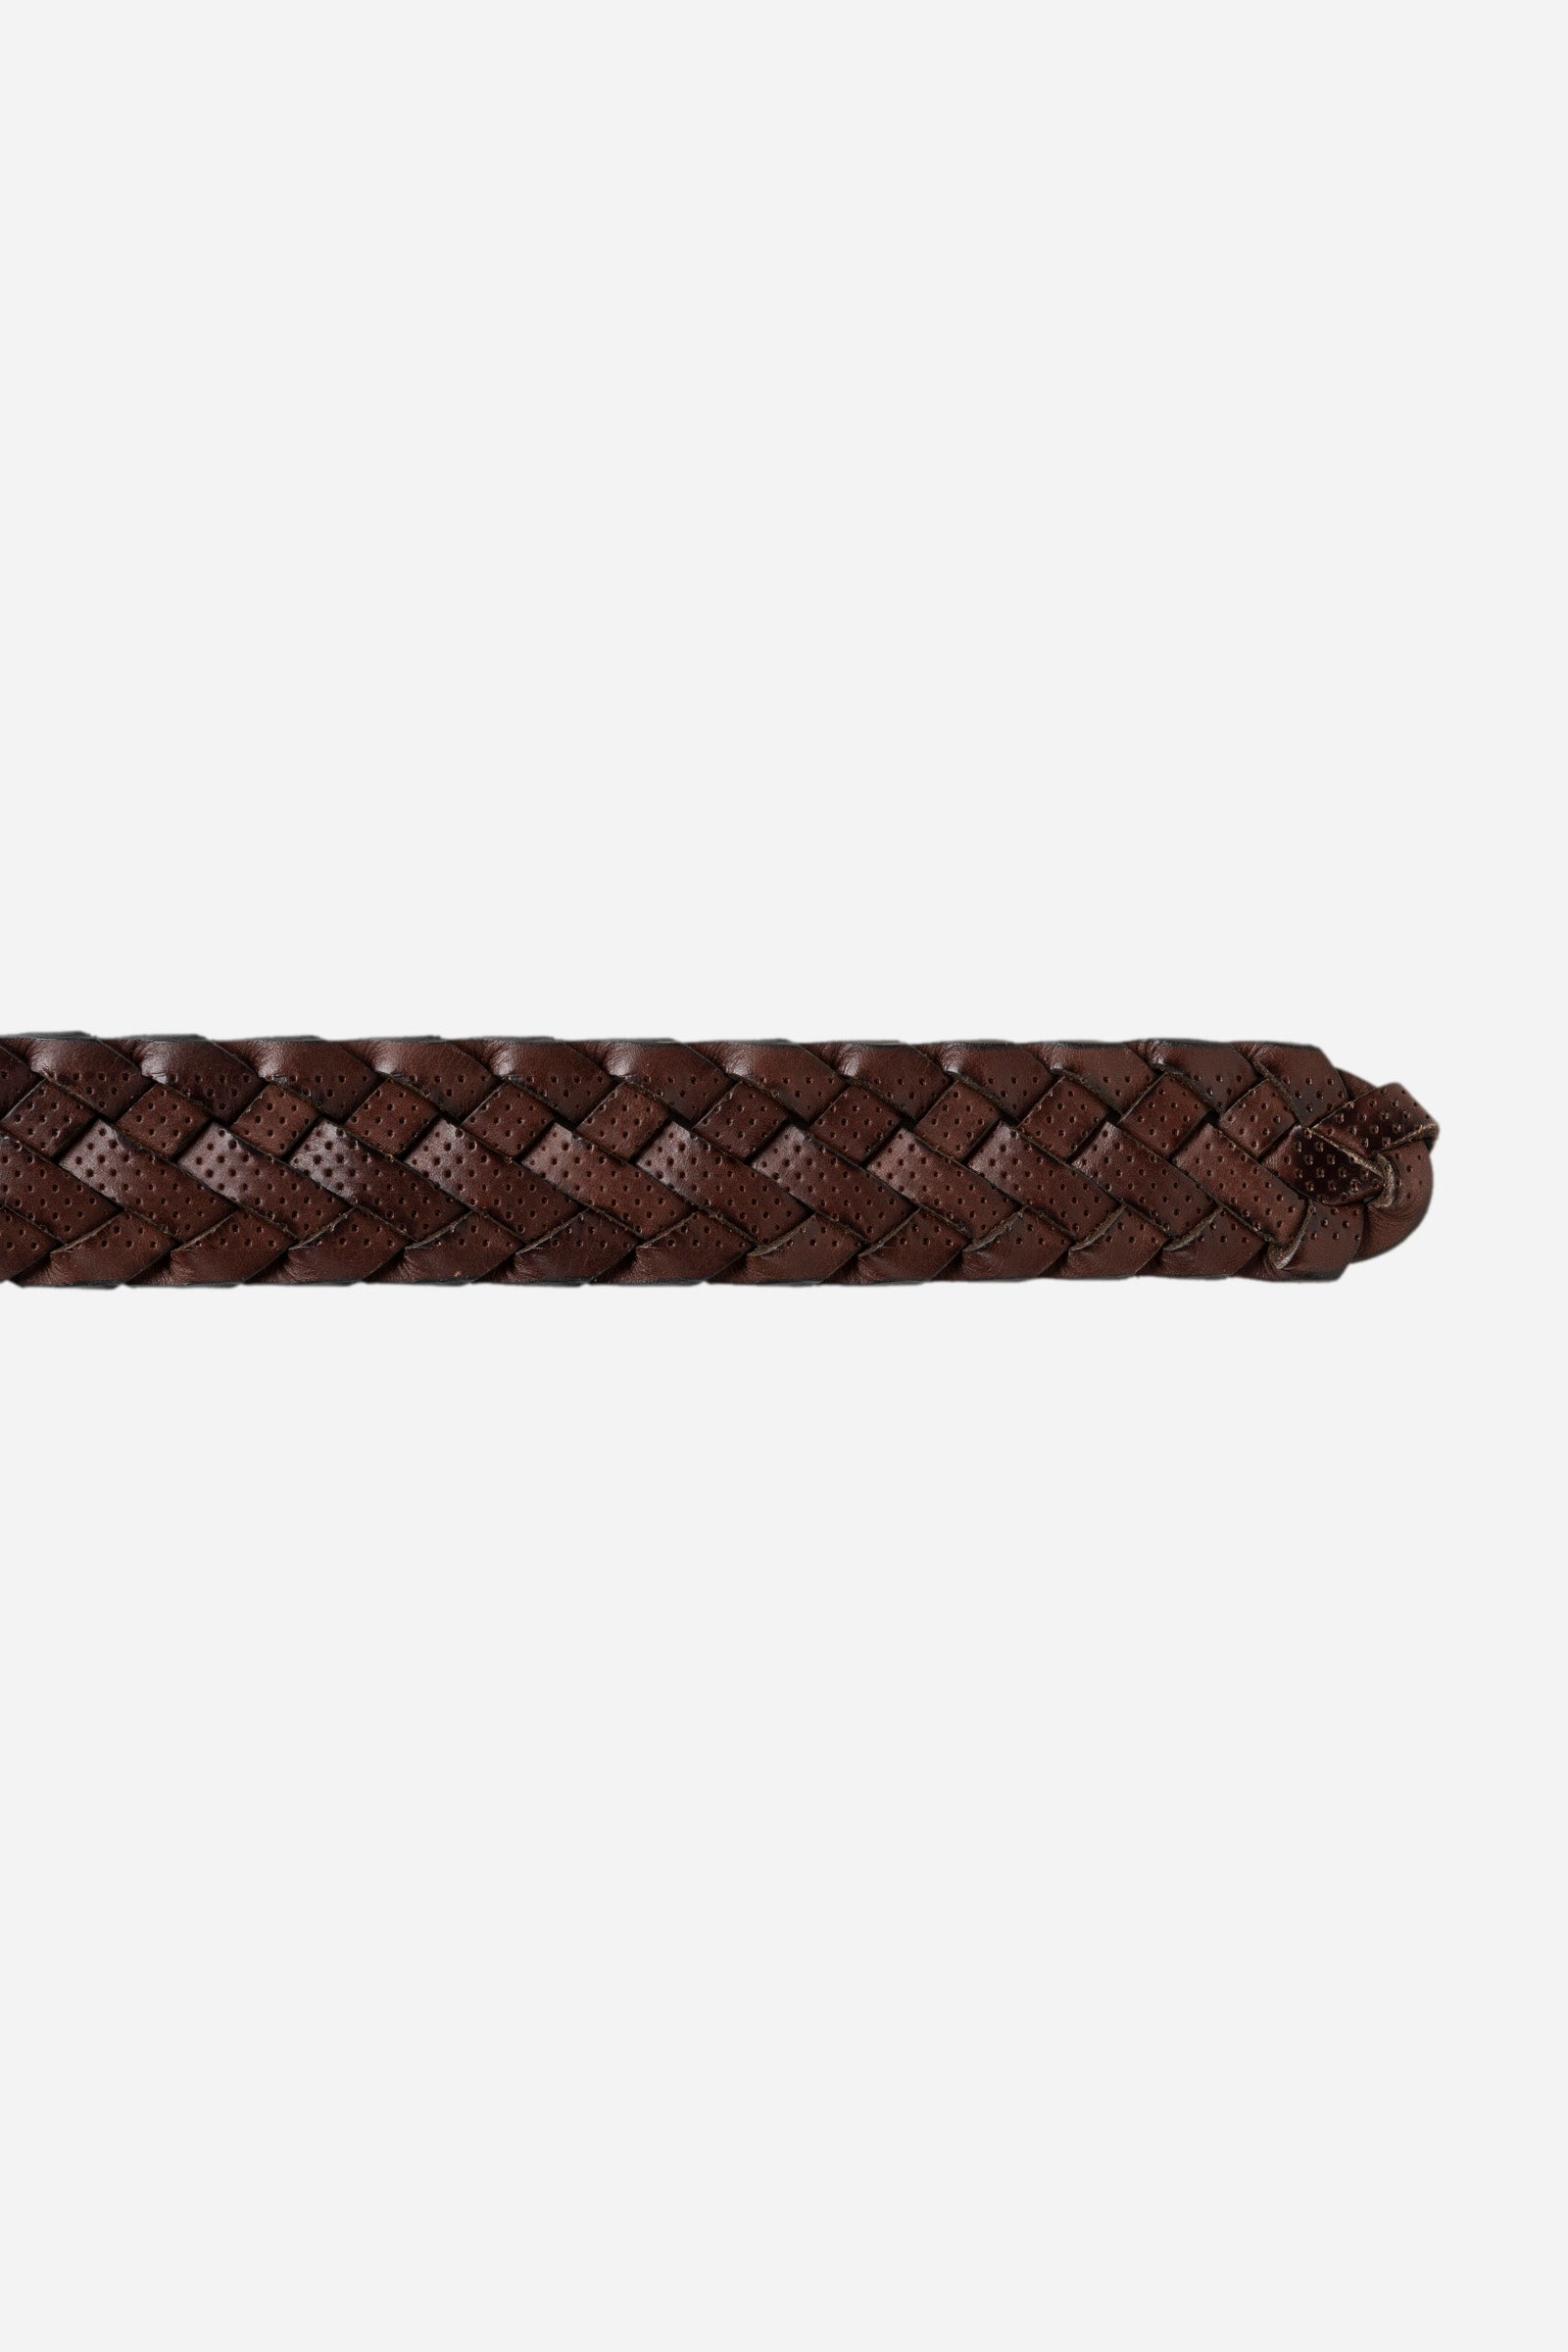 Men's belt in woven leather